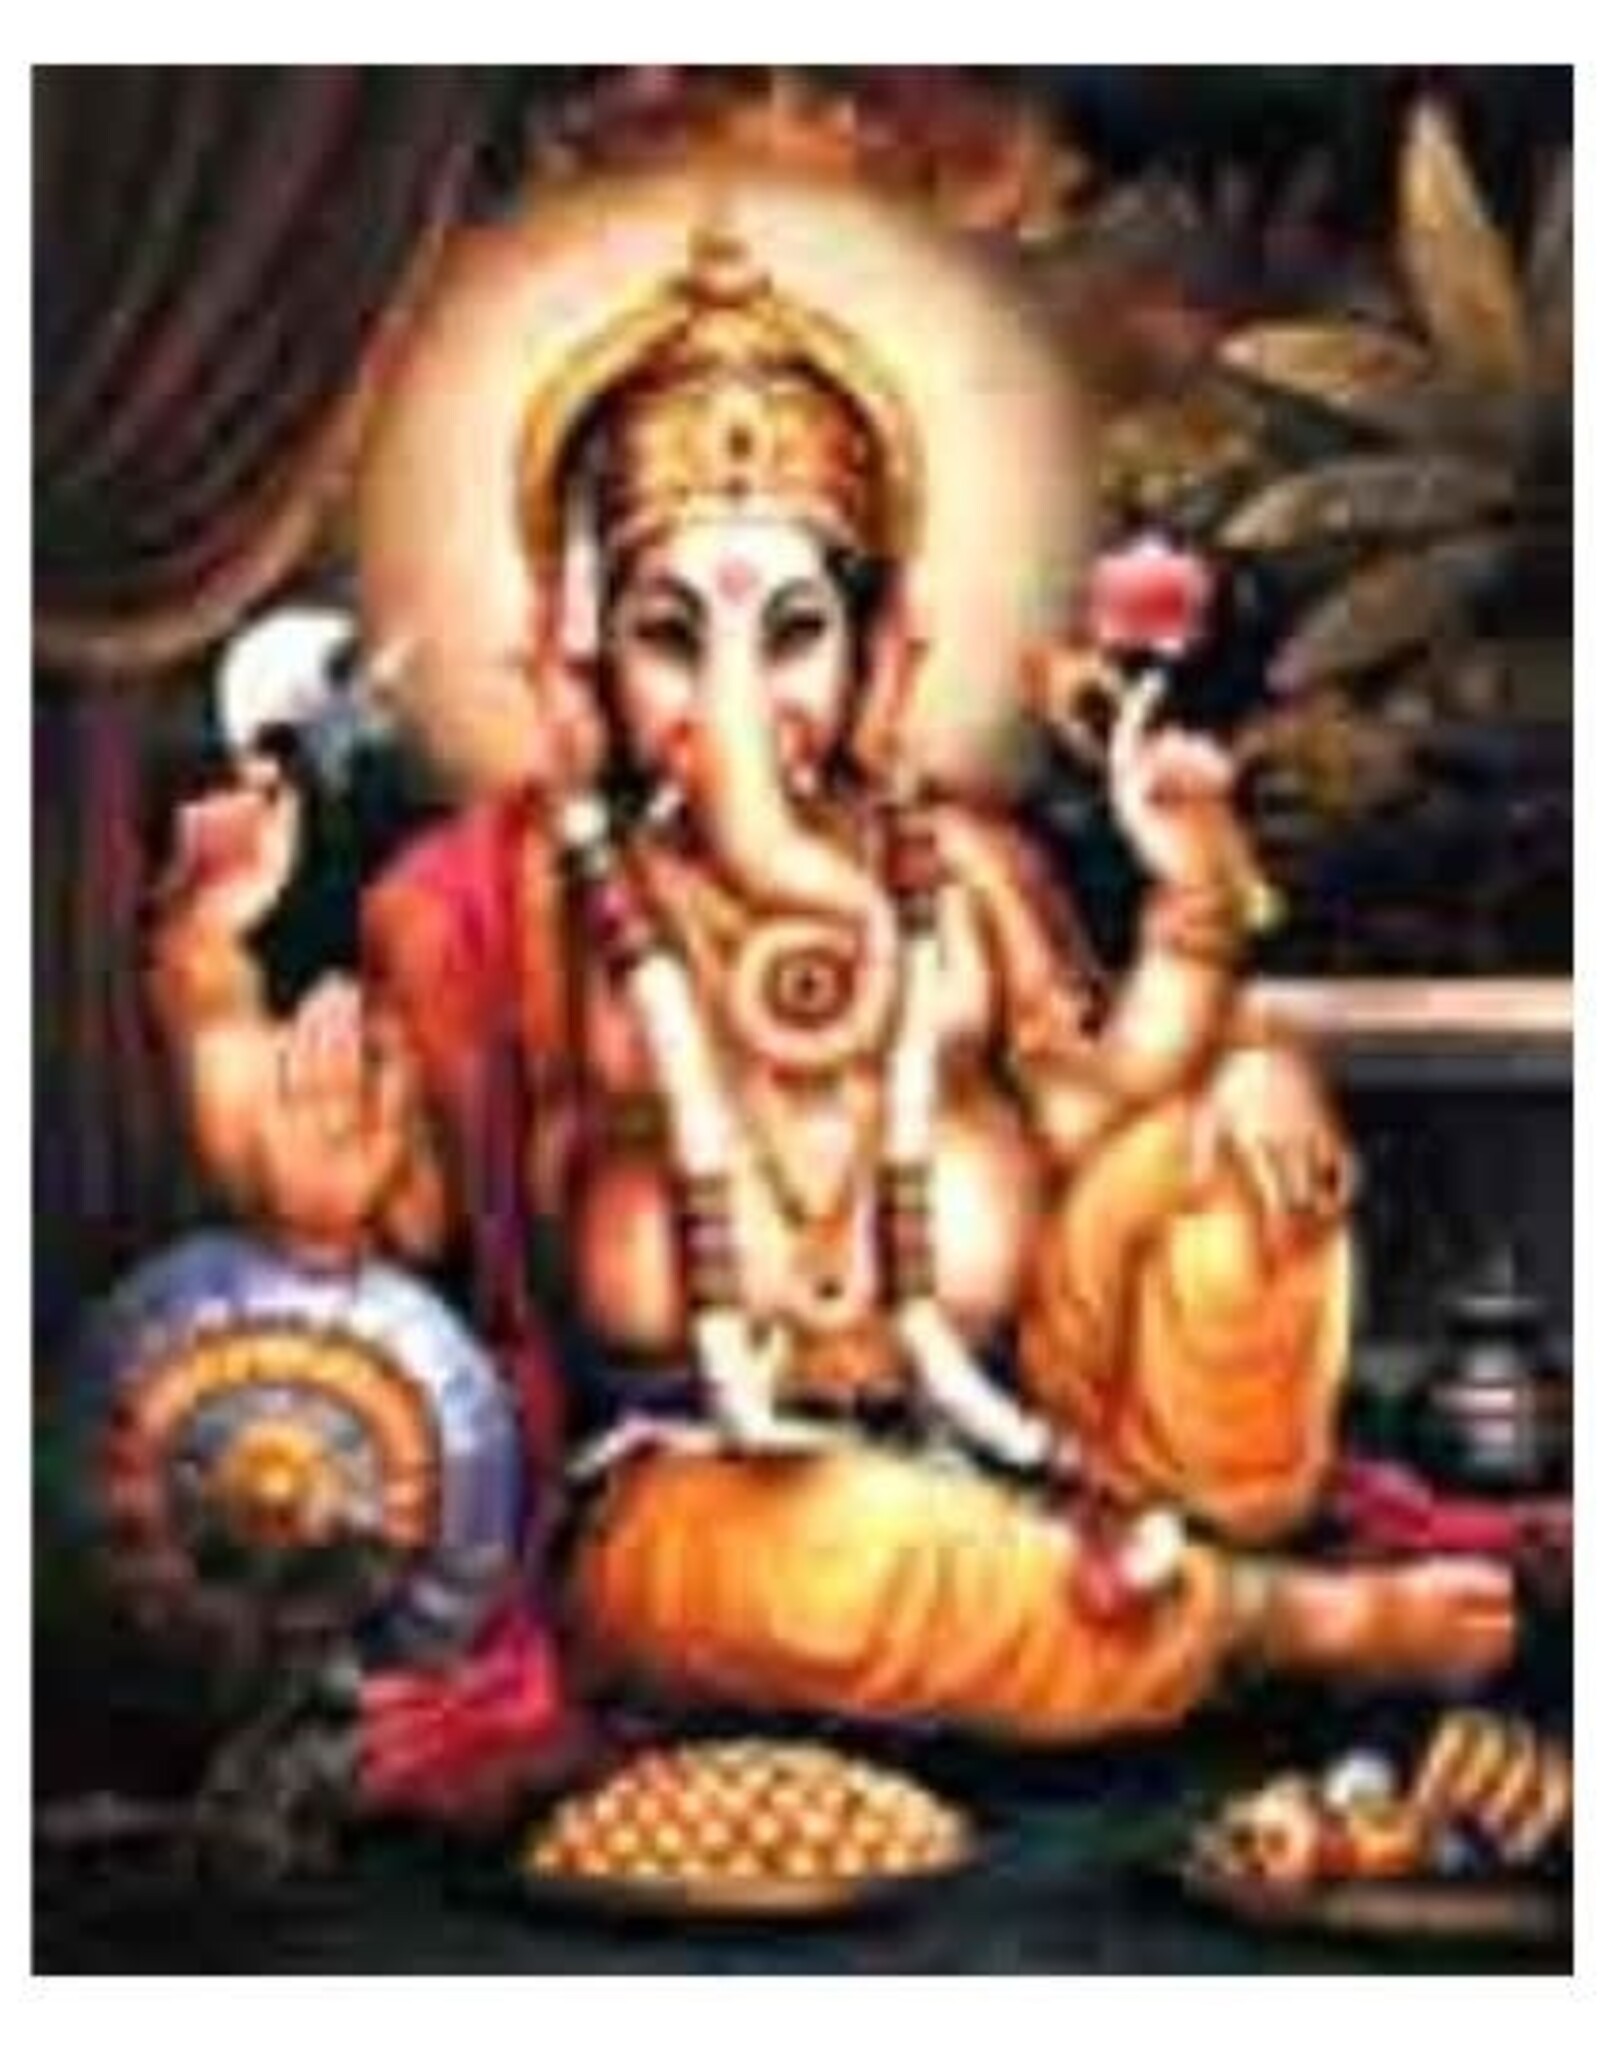 Ganesha - Laminated Cards